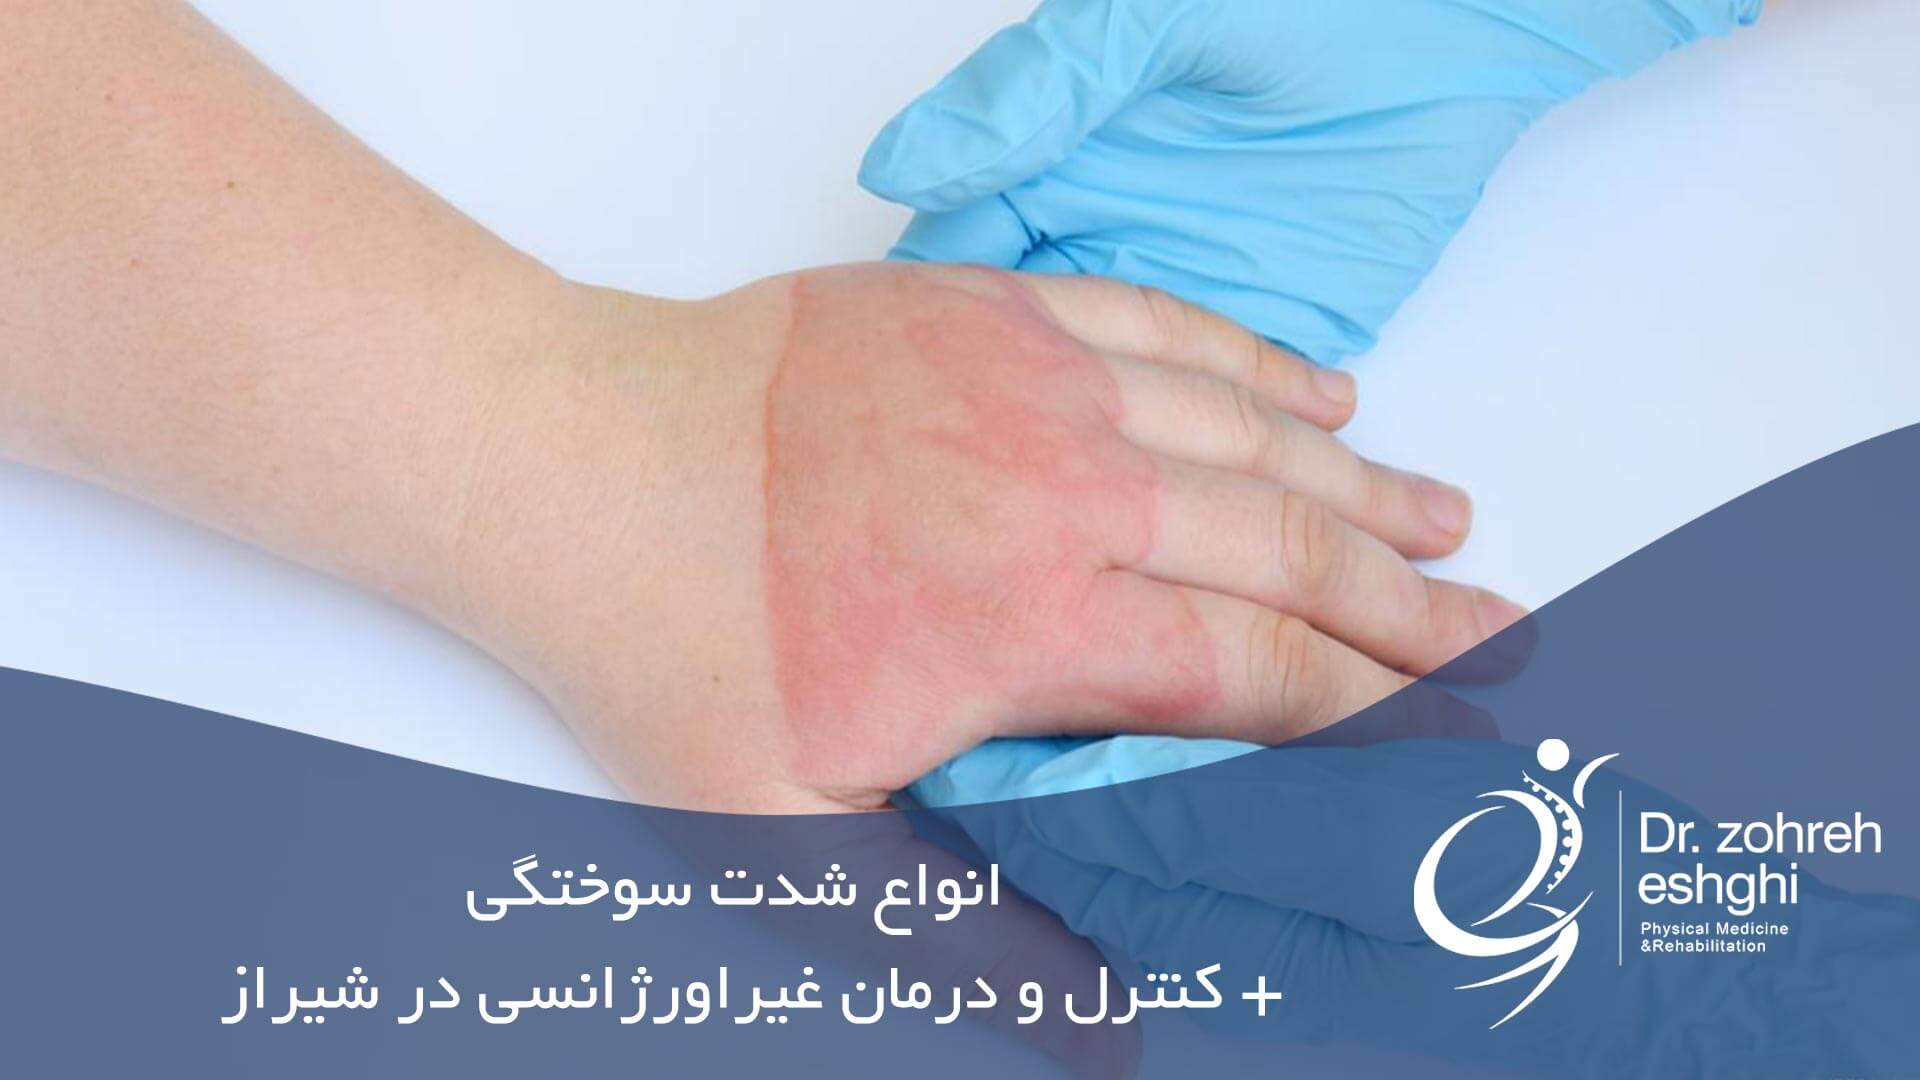 انواع شدت سوختگی + کنترل و درمان غیراورژانسی در شیراز